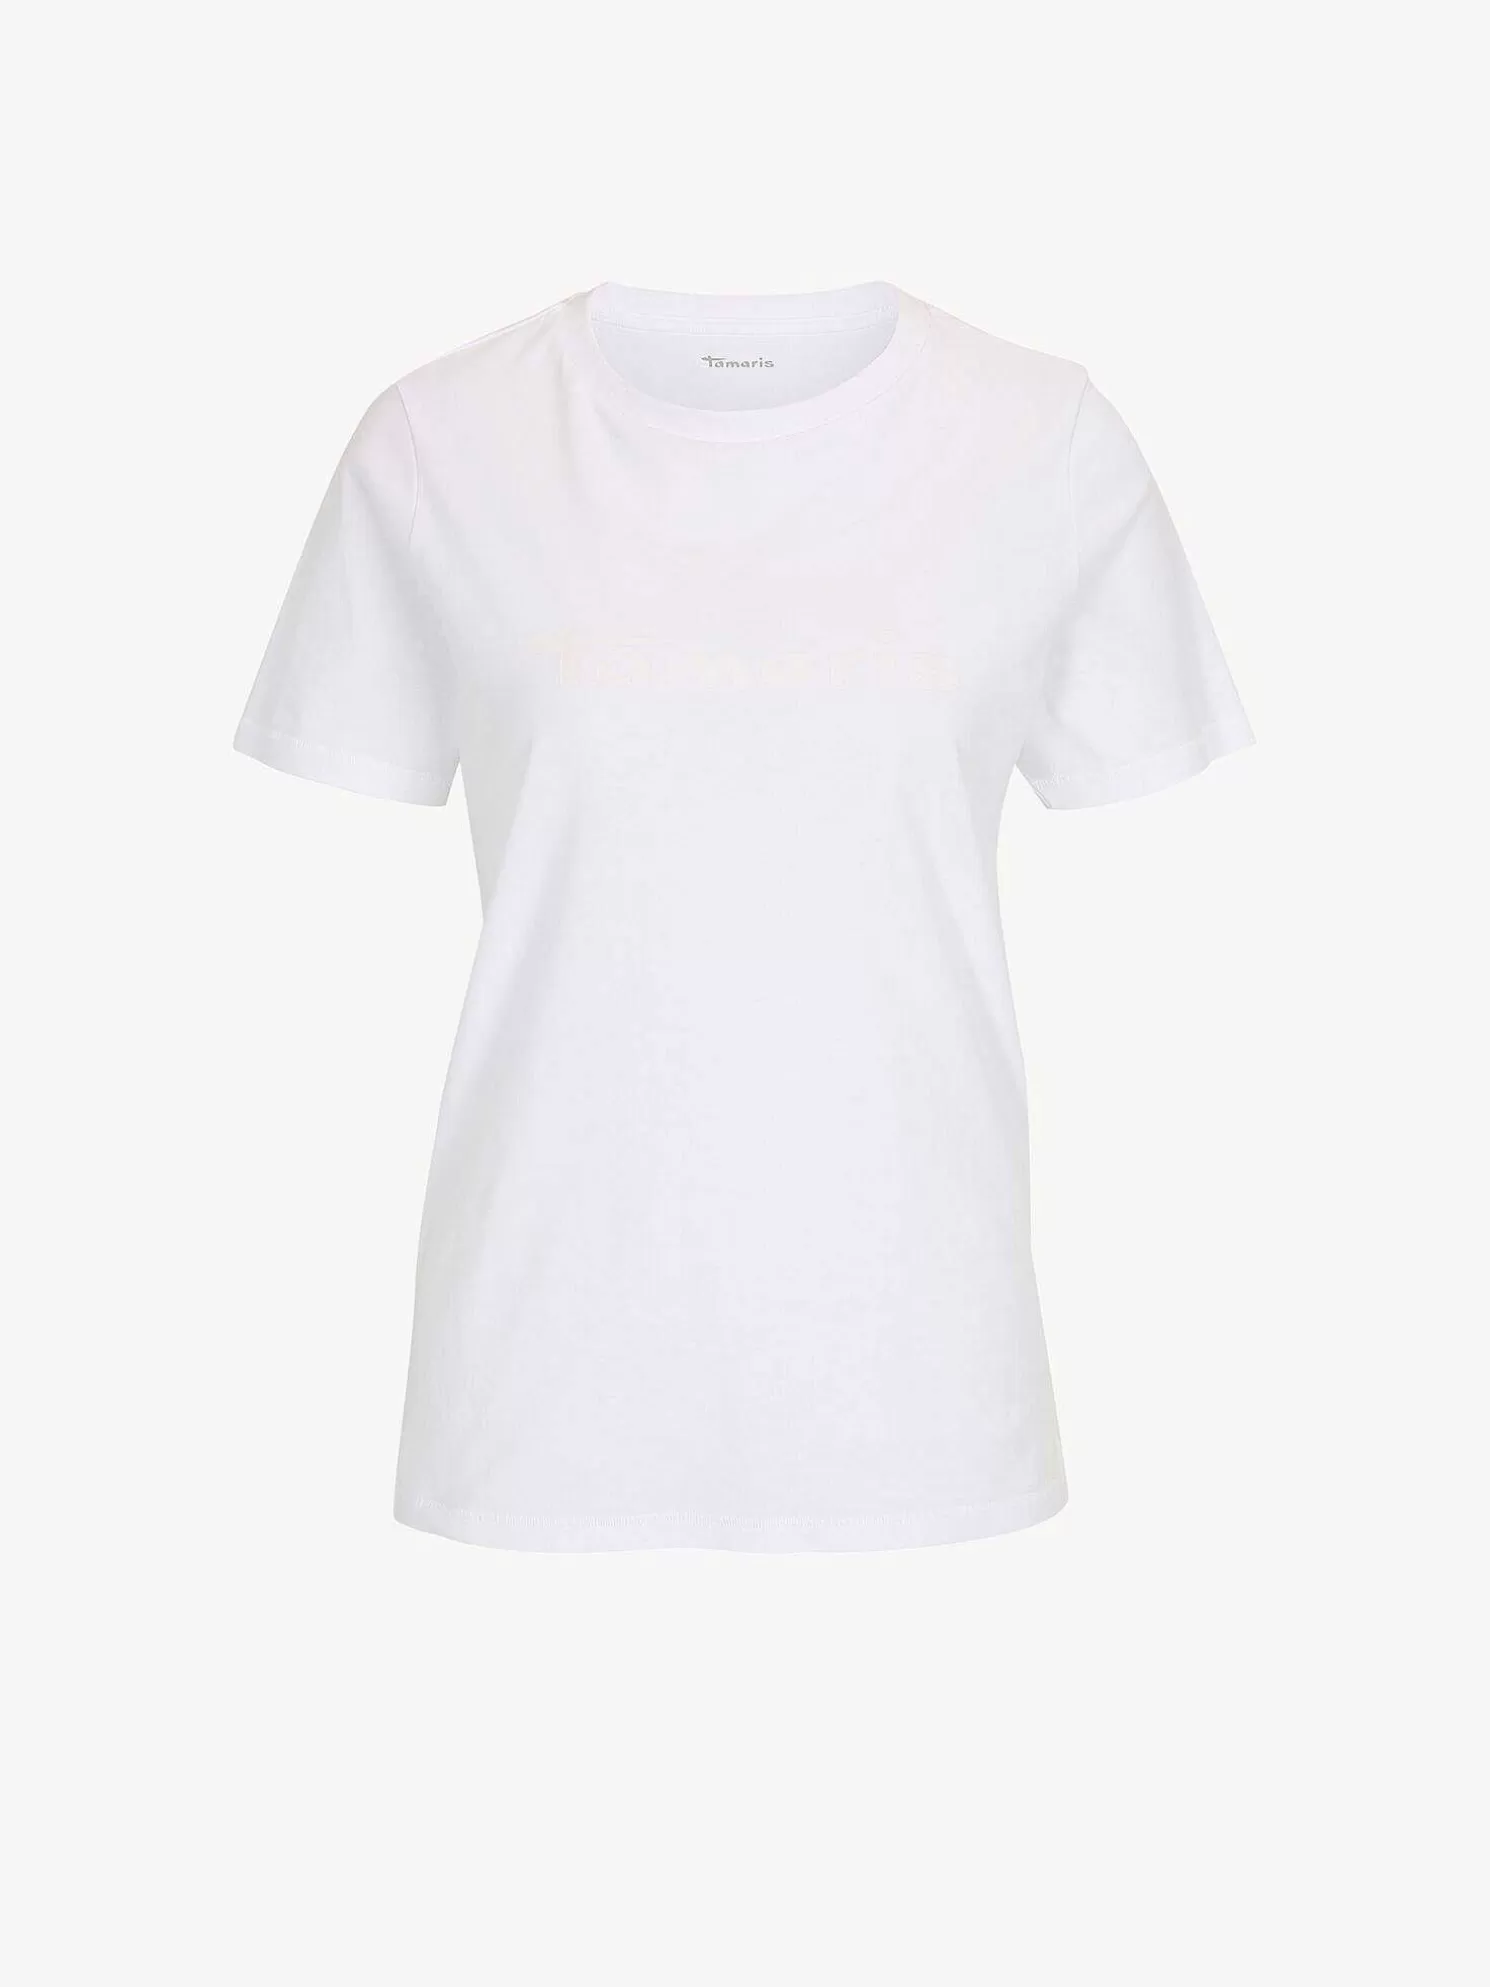 T-Shirt - Weis*Tamaris Online